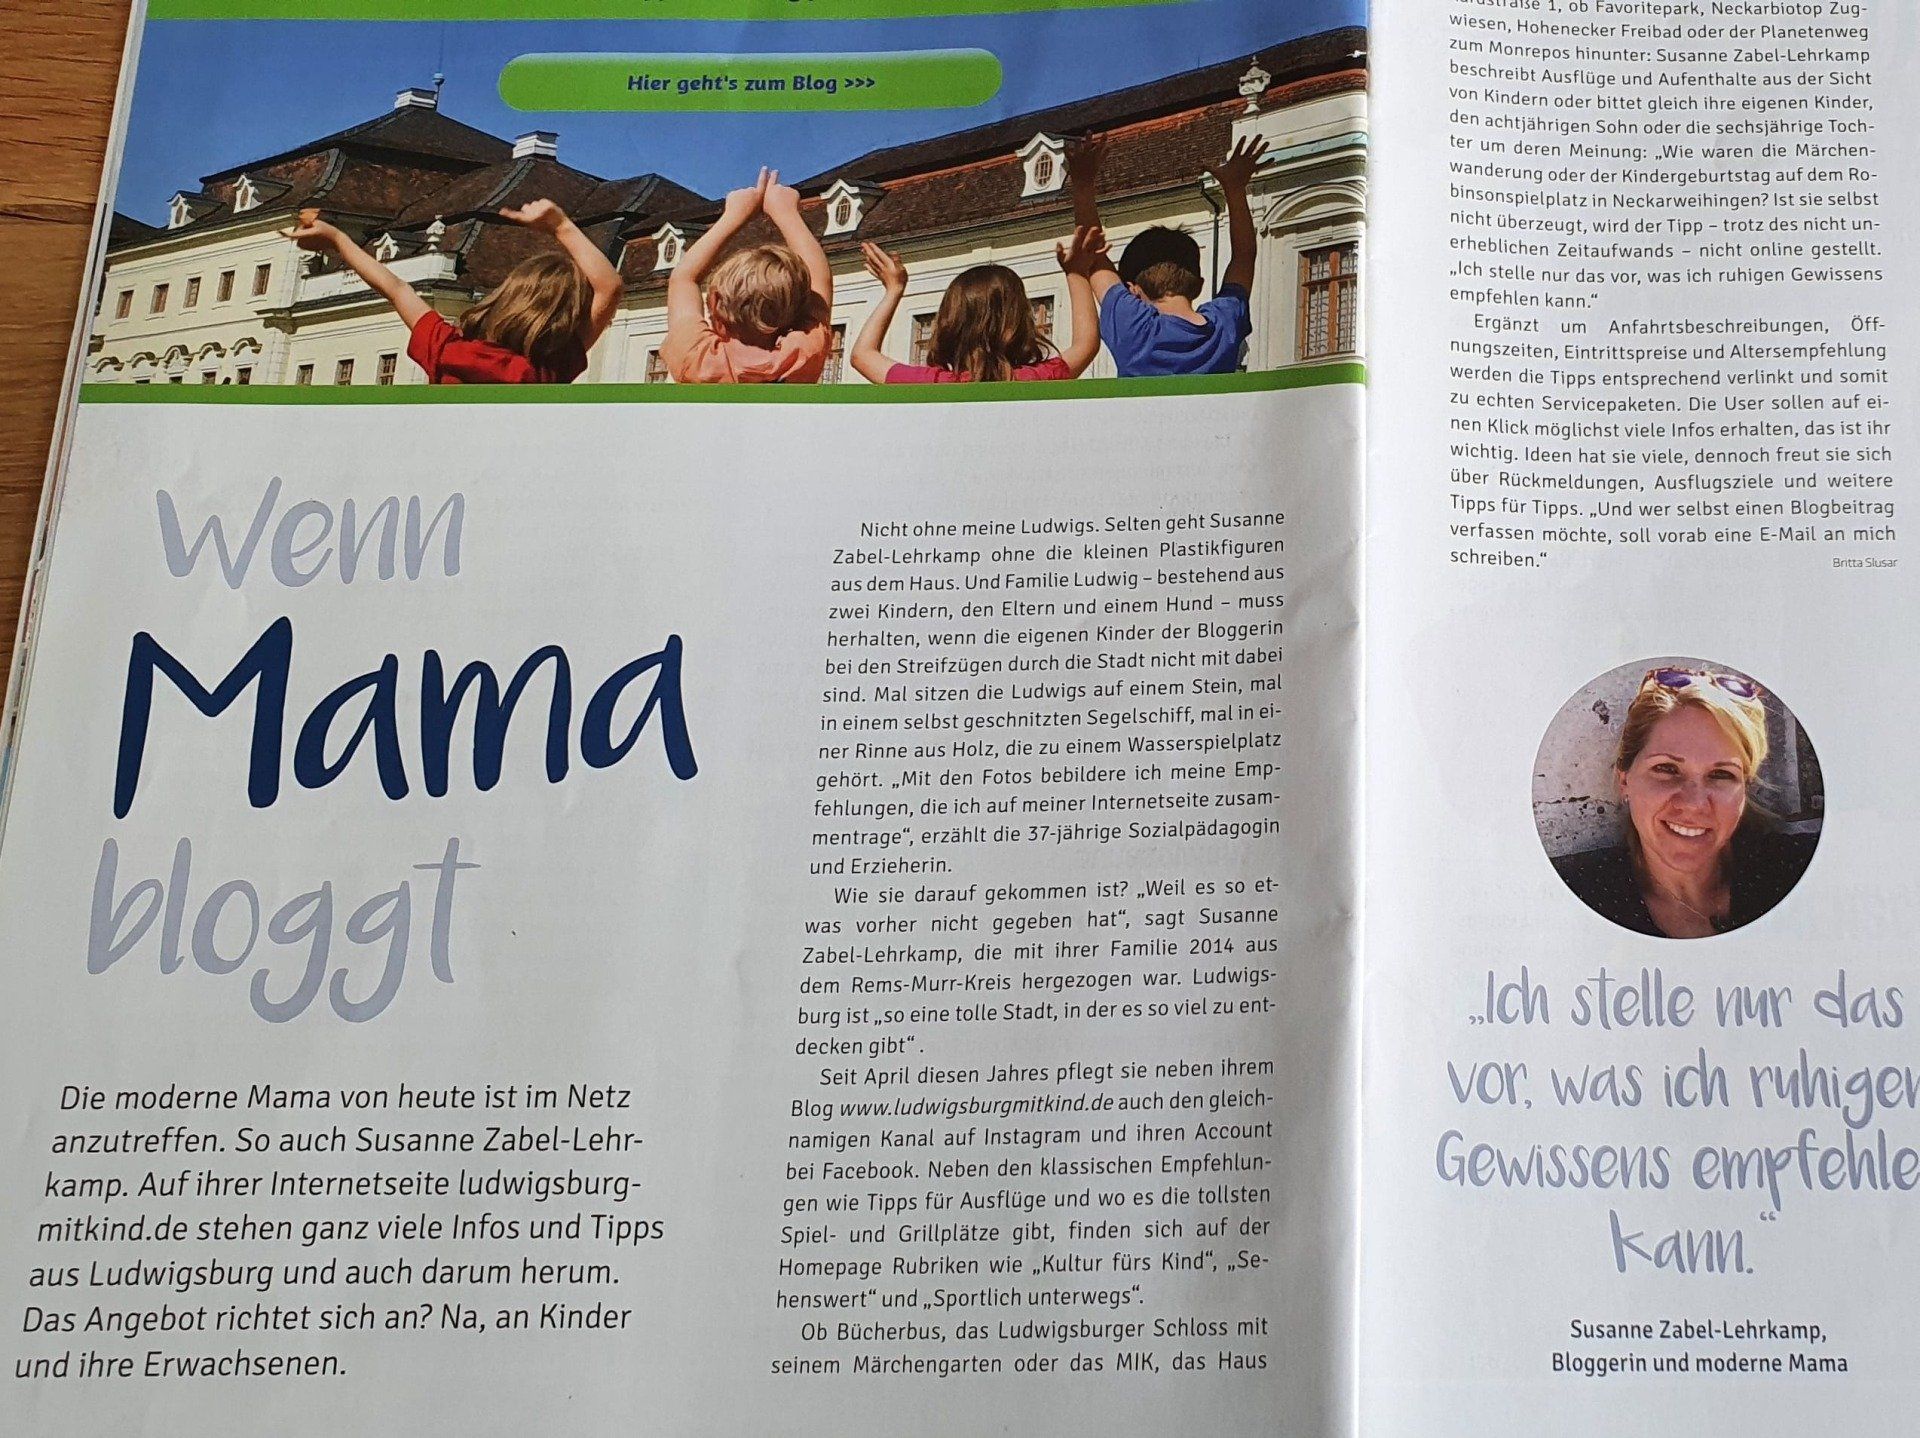 Pressebericht Elternzeitung Lilliput Familie Ausflug Ludwigsburg mit Kind Susanne Zabel-Lehrkamp